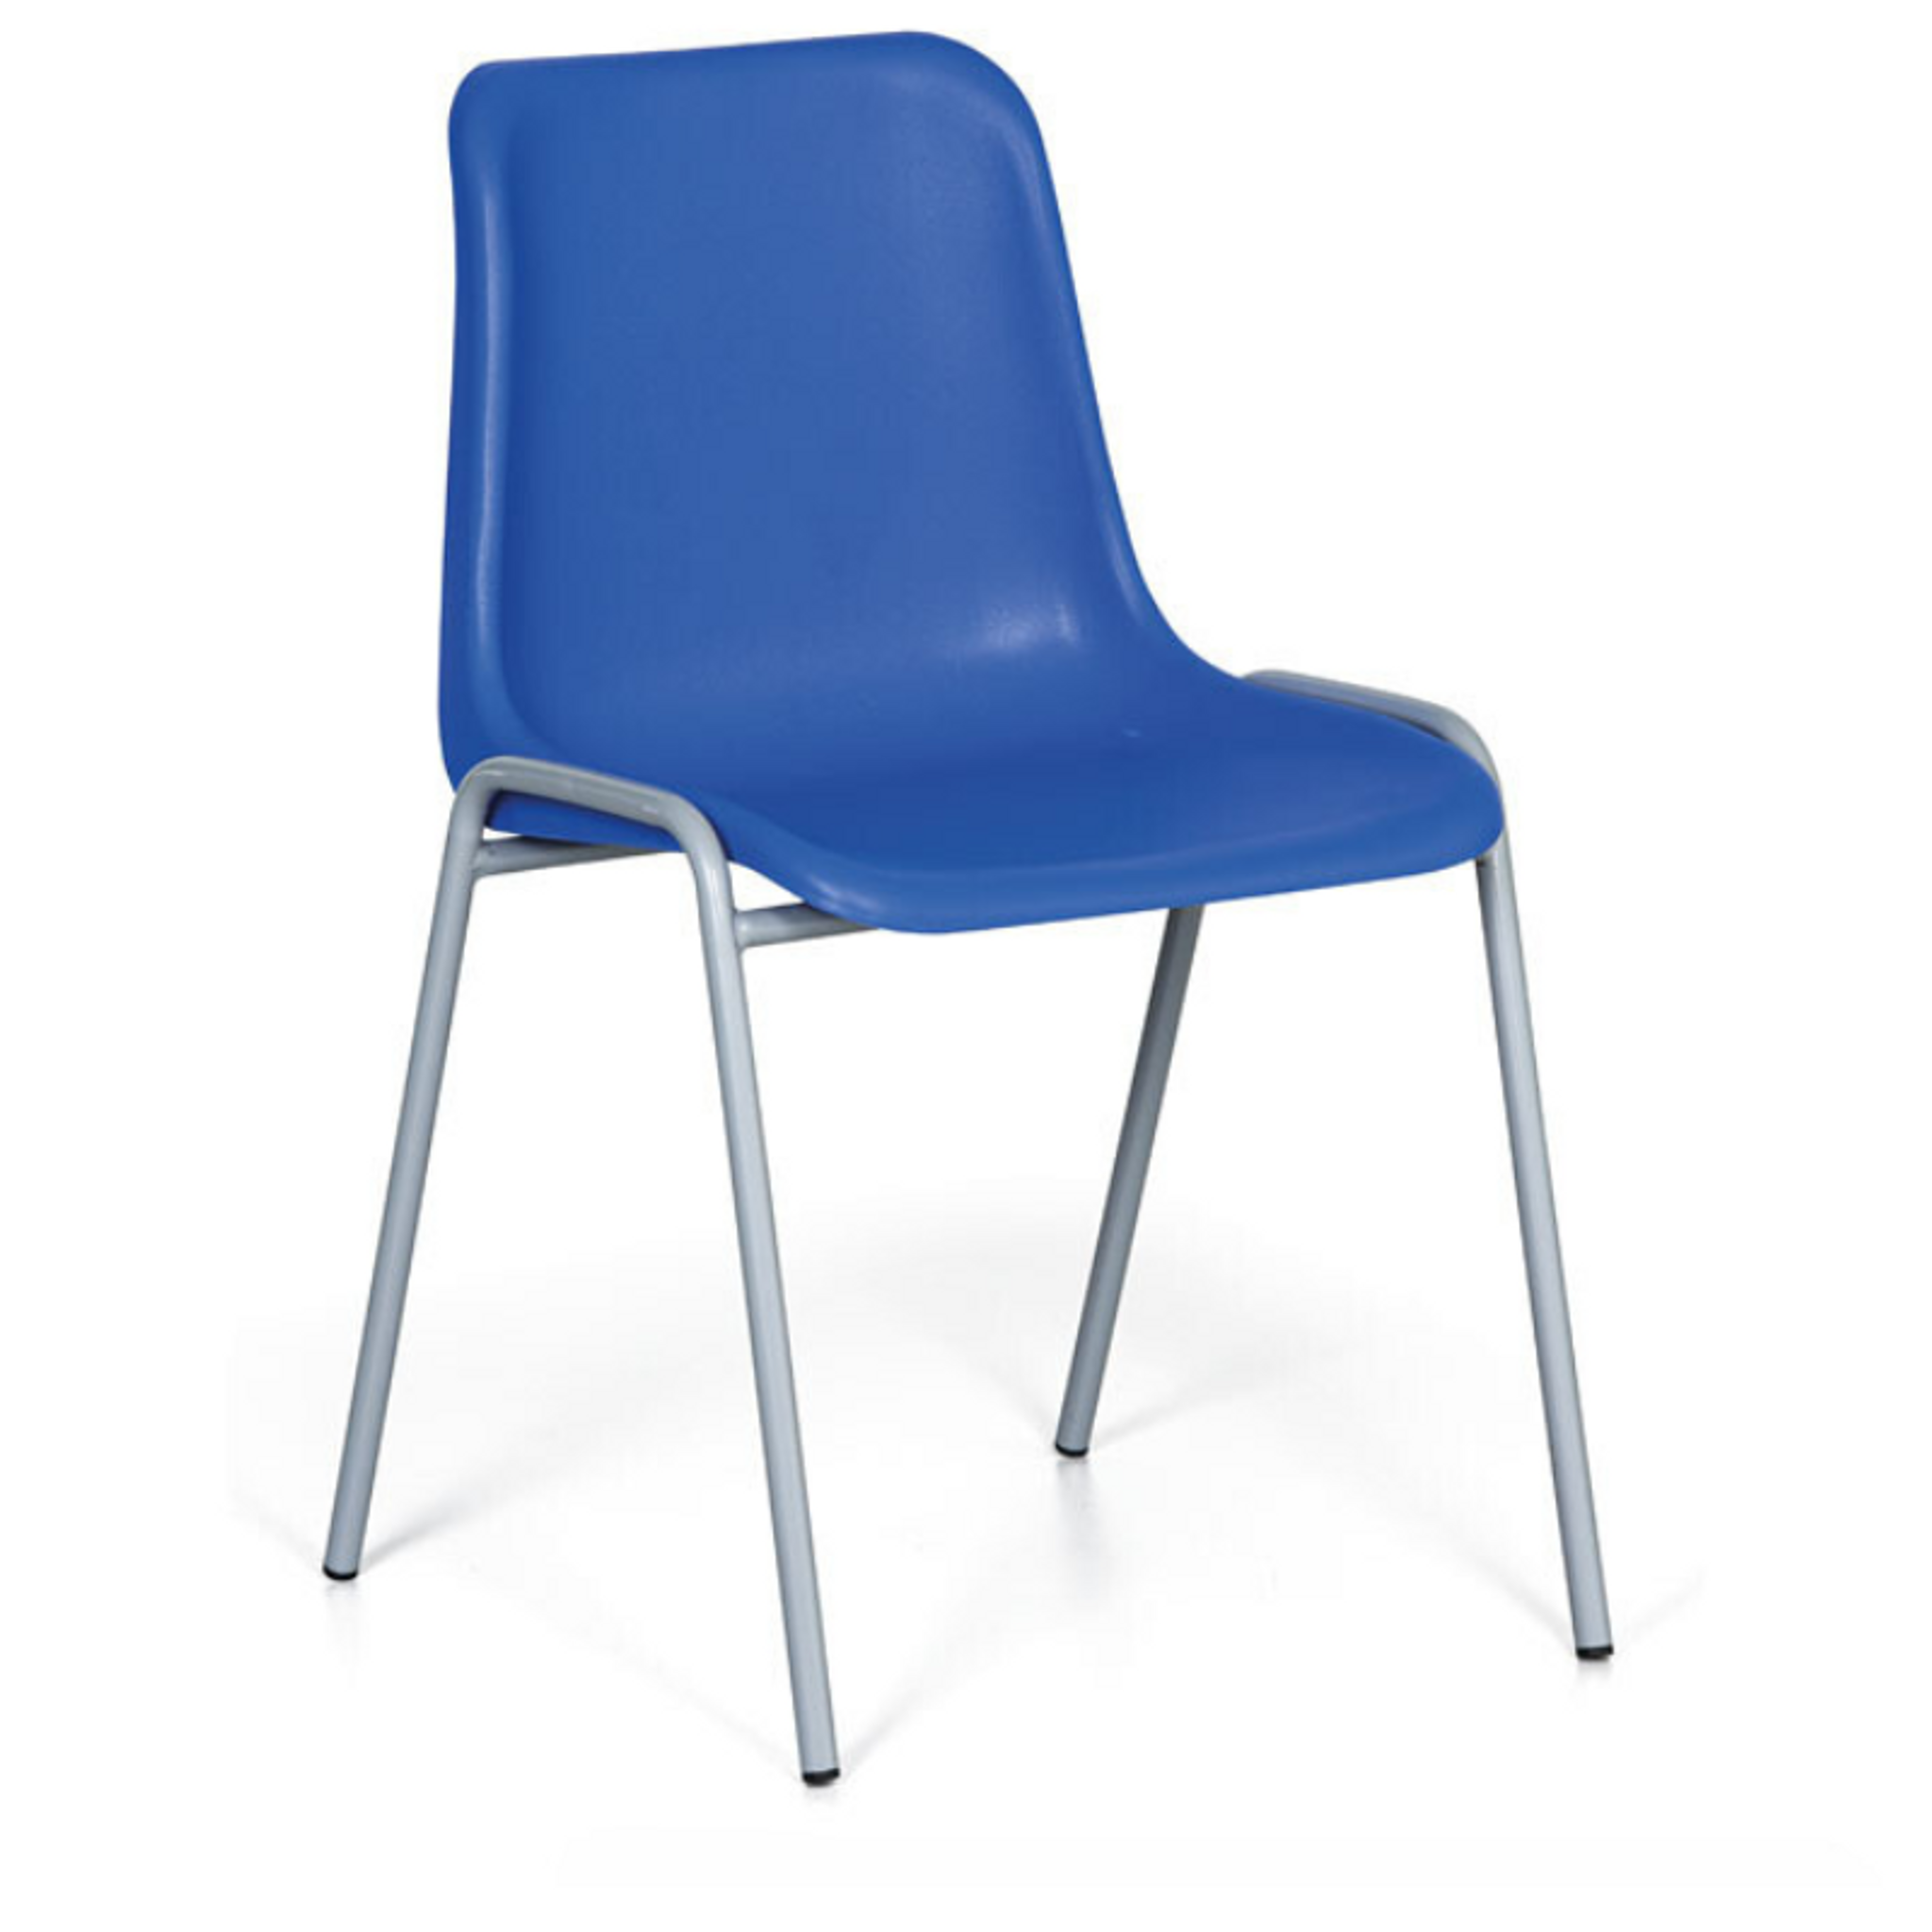 Plastová jedálenská stolička AMADOR, modrá